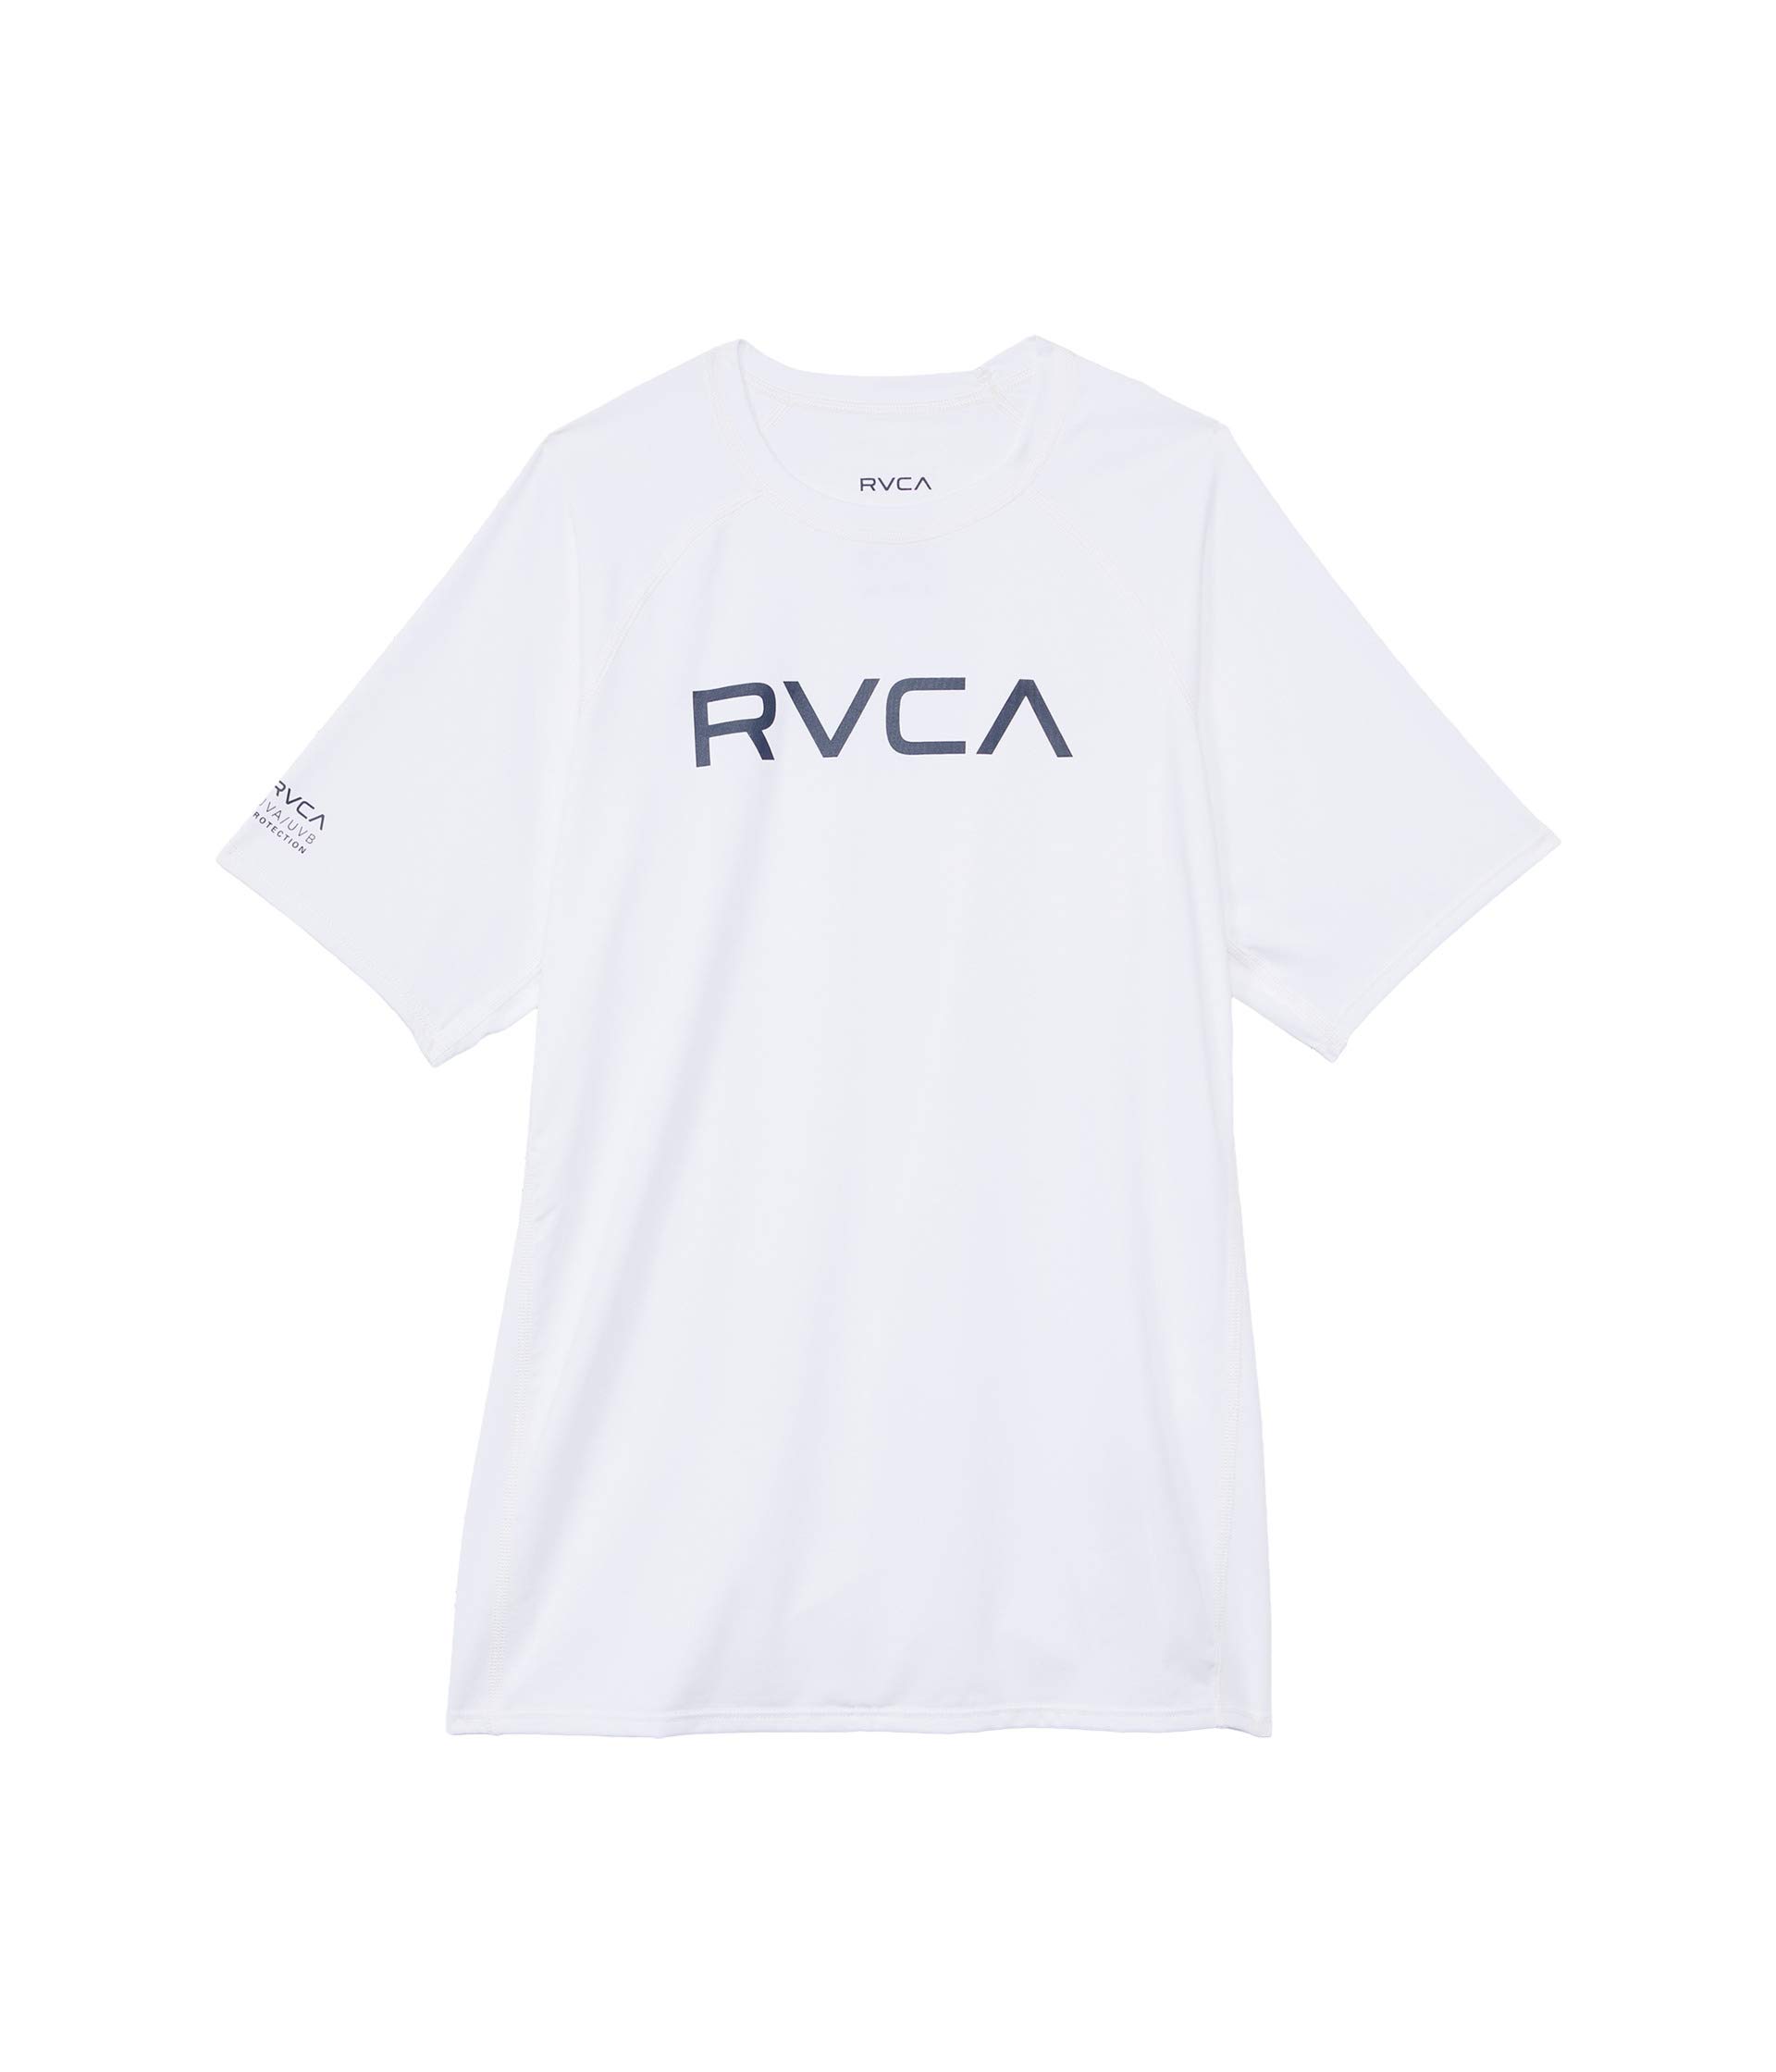 Рашгард RVCA с короткими рукавами (для маленьких / больших детей) RVCA Kids